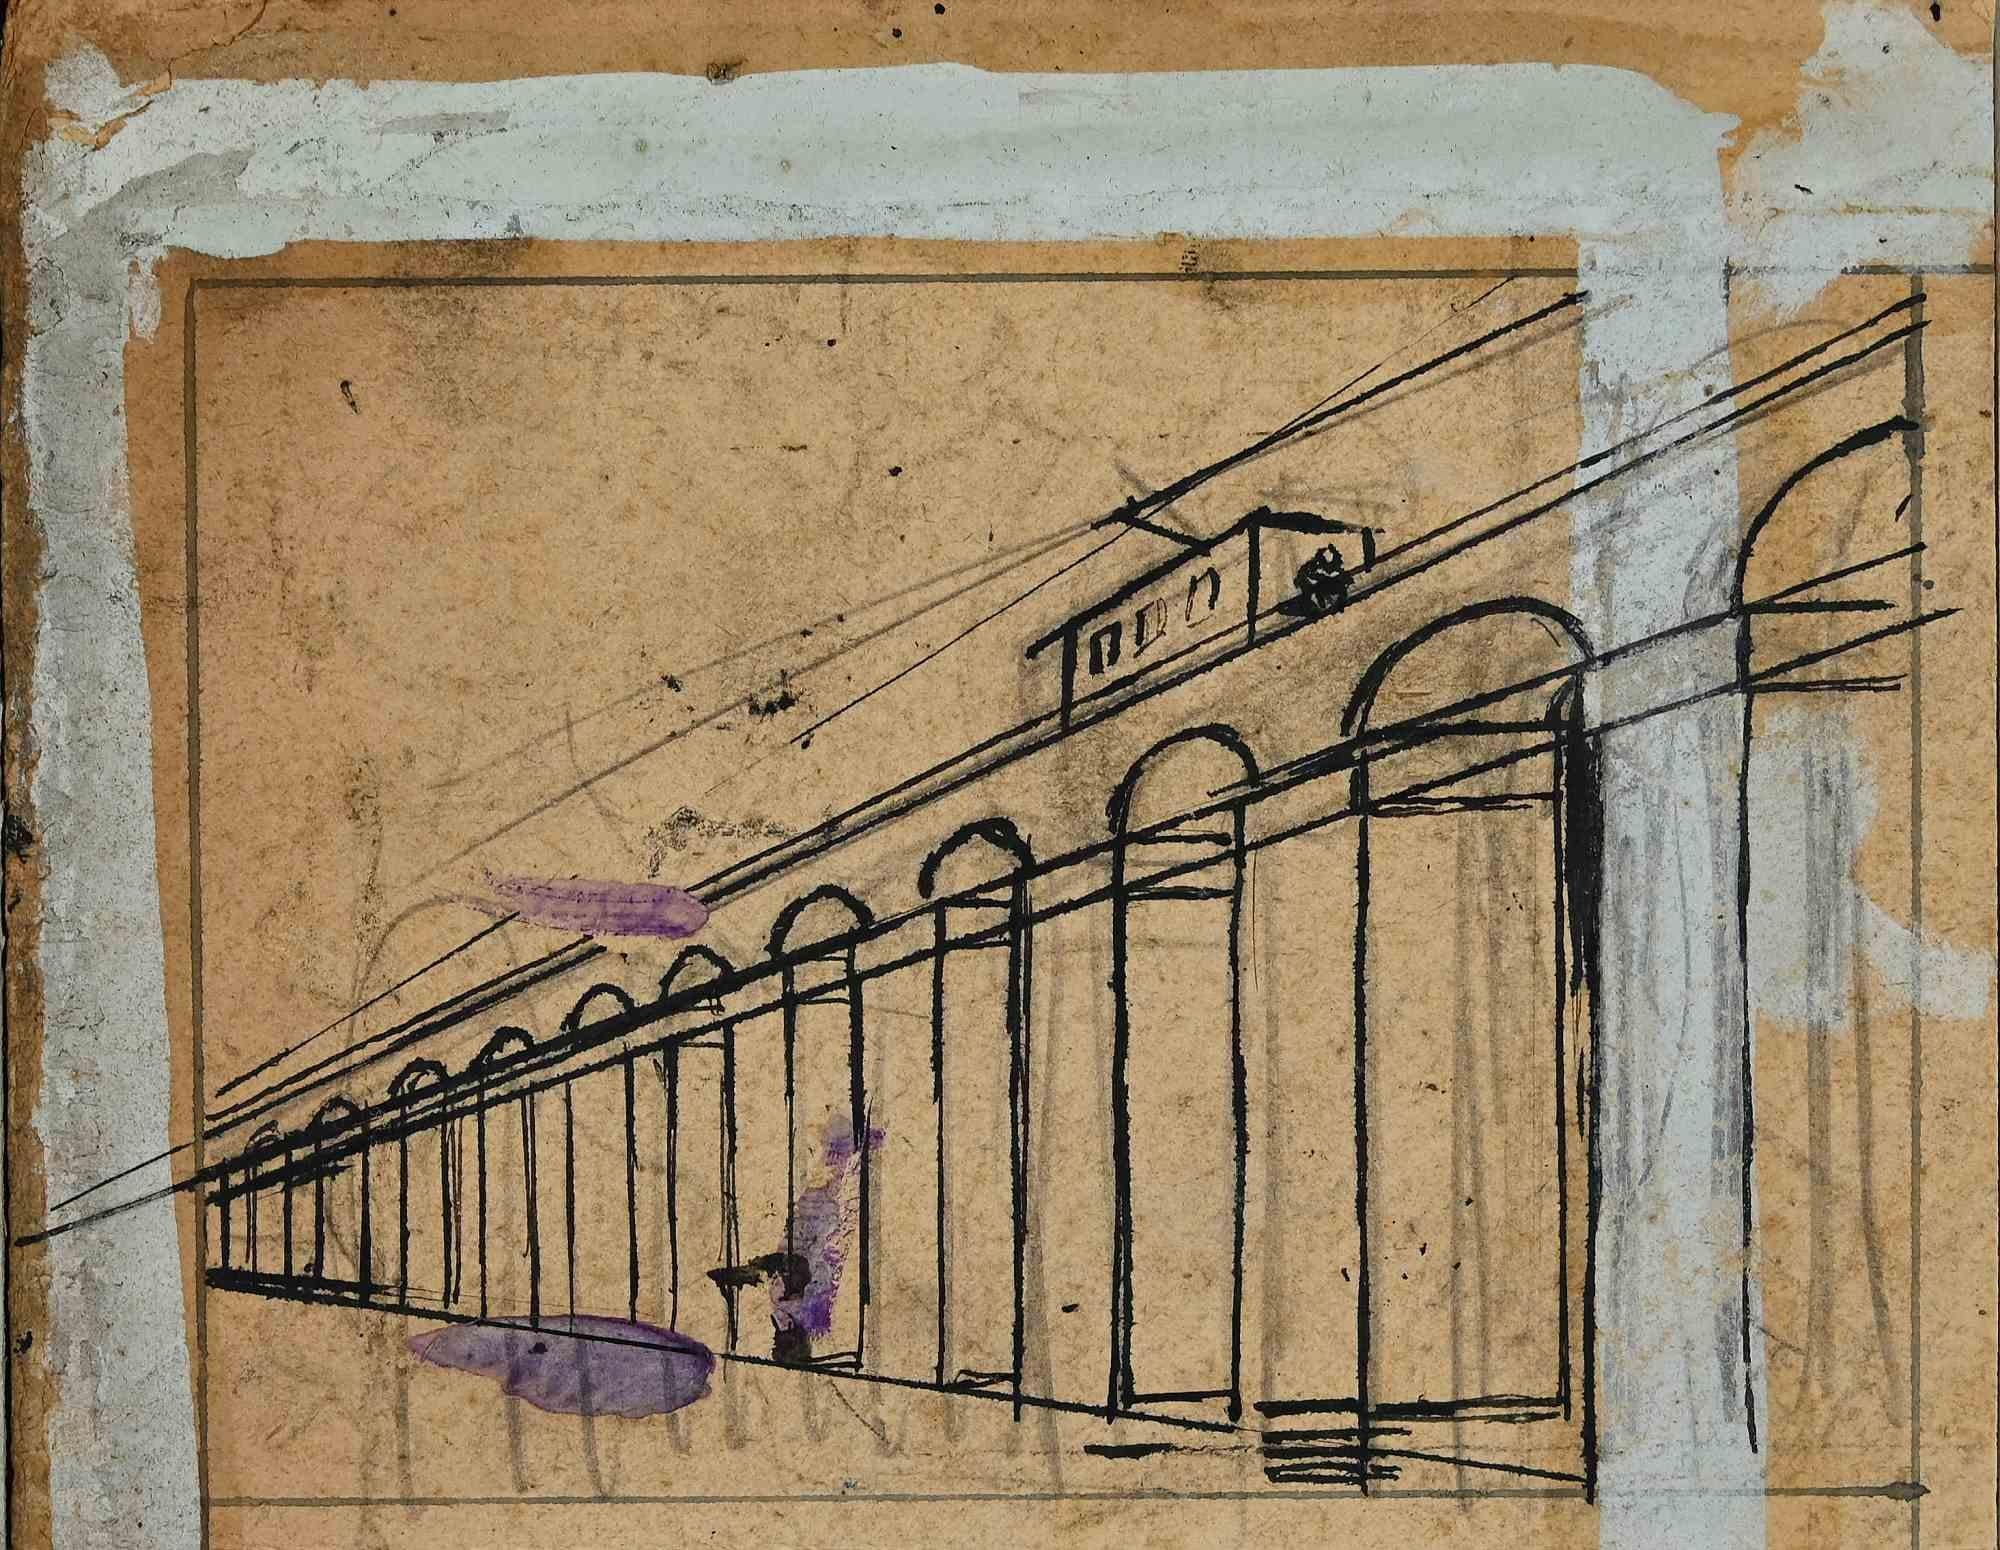 Tram ist eine Originalzeichnung aus China und Blei von Gabriele Galantara aus dem Jahr 1905.

Guter Zustand, montiert auf einem cremefarbenen Passepartout aus Karton (34,5x50 cm) mit hellblauem Profil.

Keine Signatur, einige violette